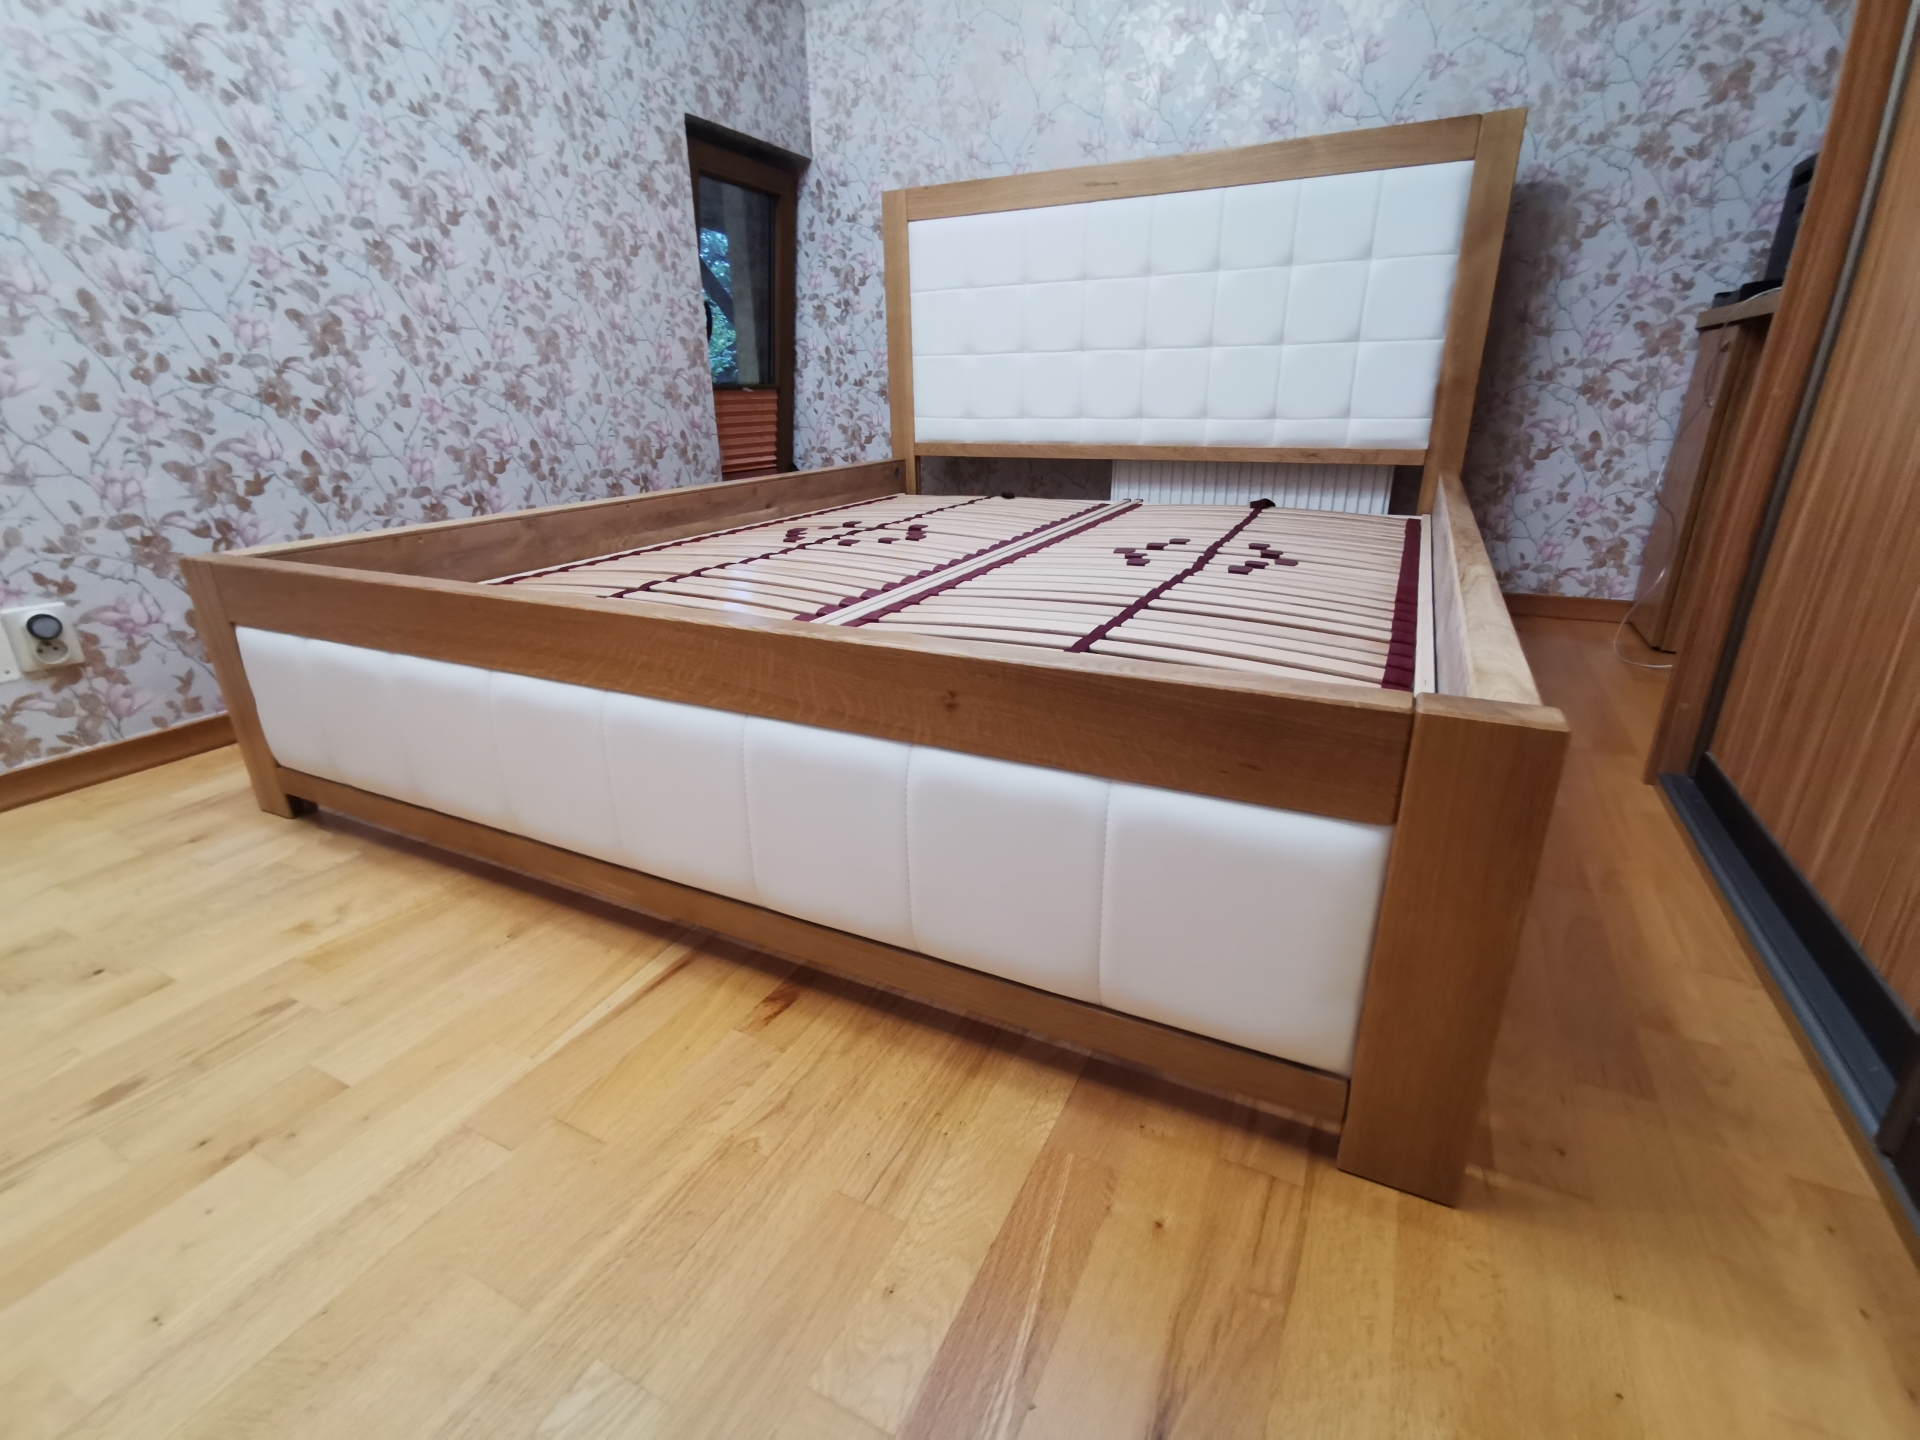 białe łóżko drewniane